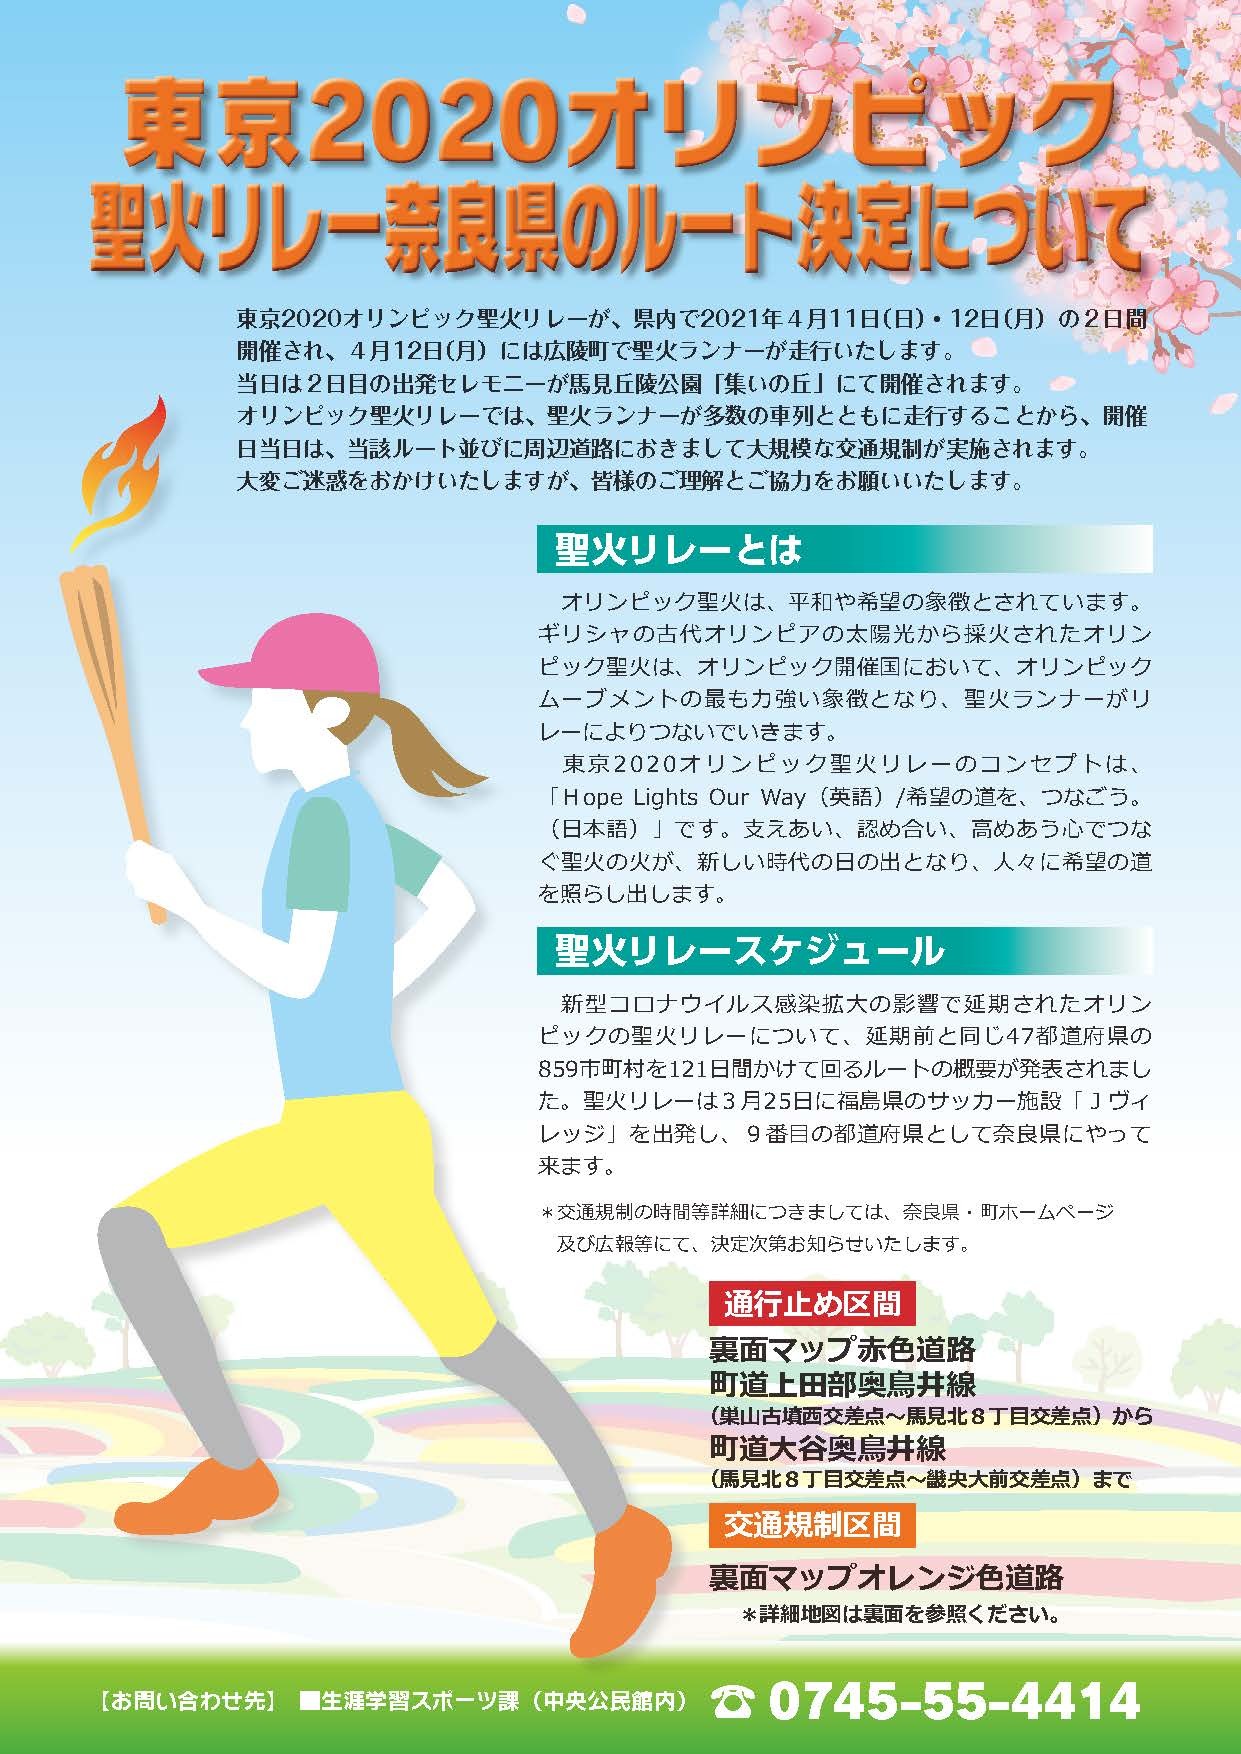 東京2020オリンピック聖火リレー奈良県のルート決定について